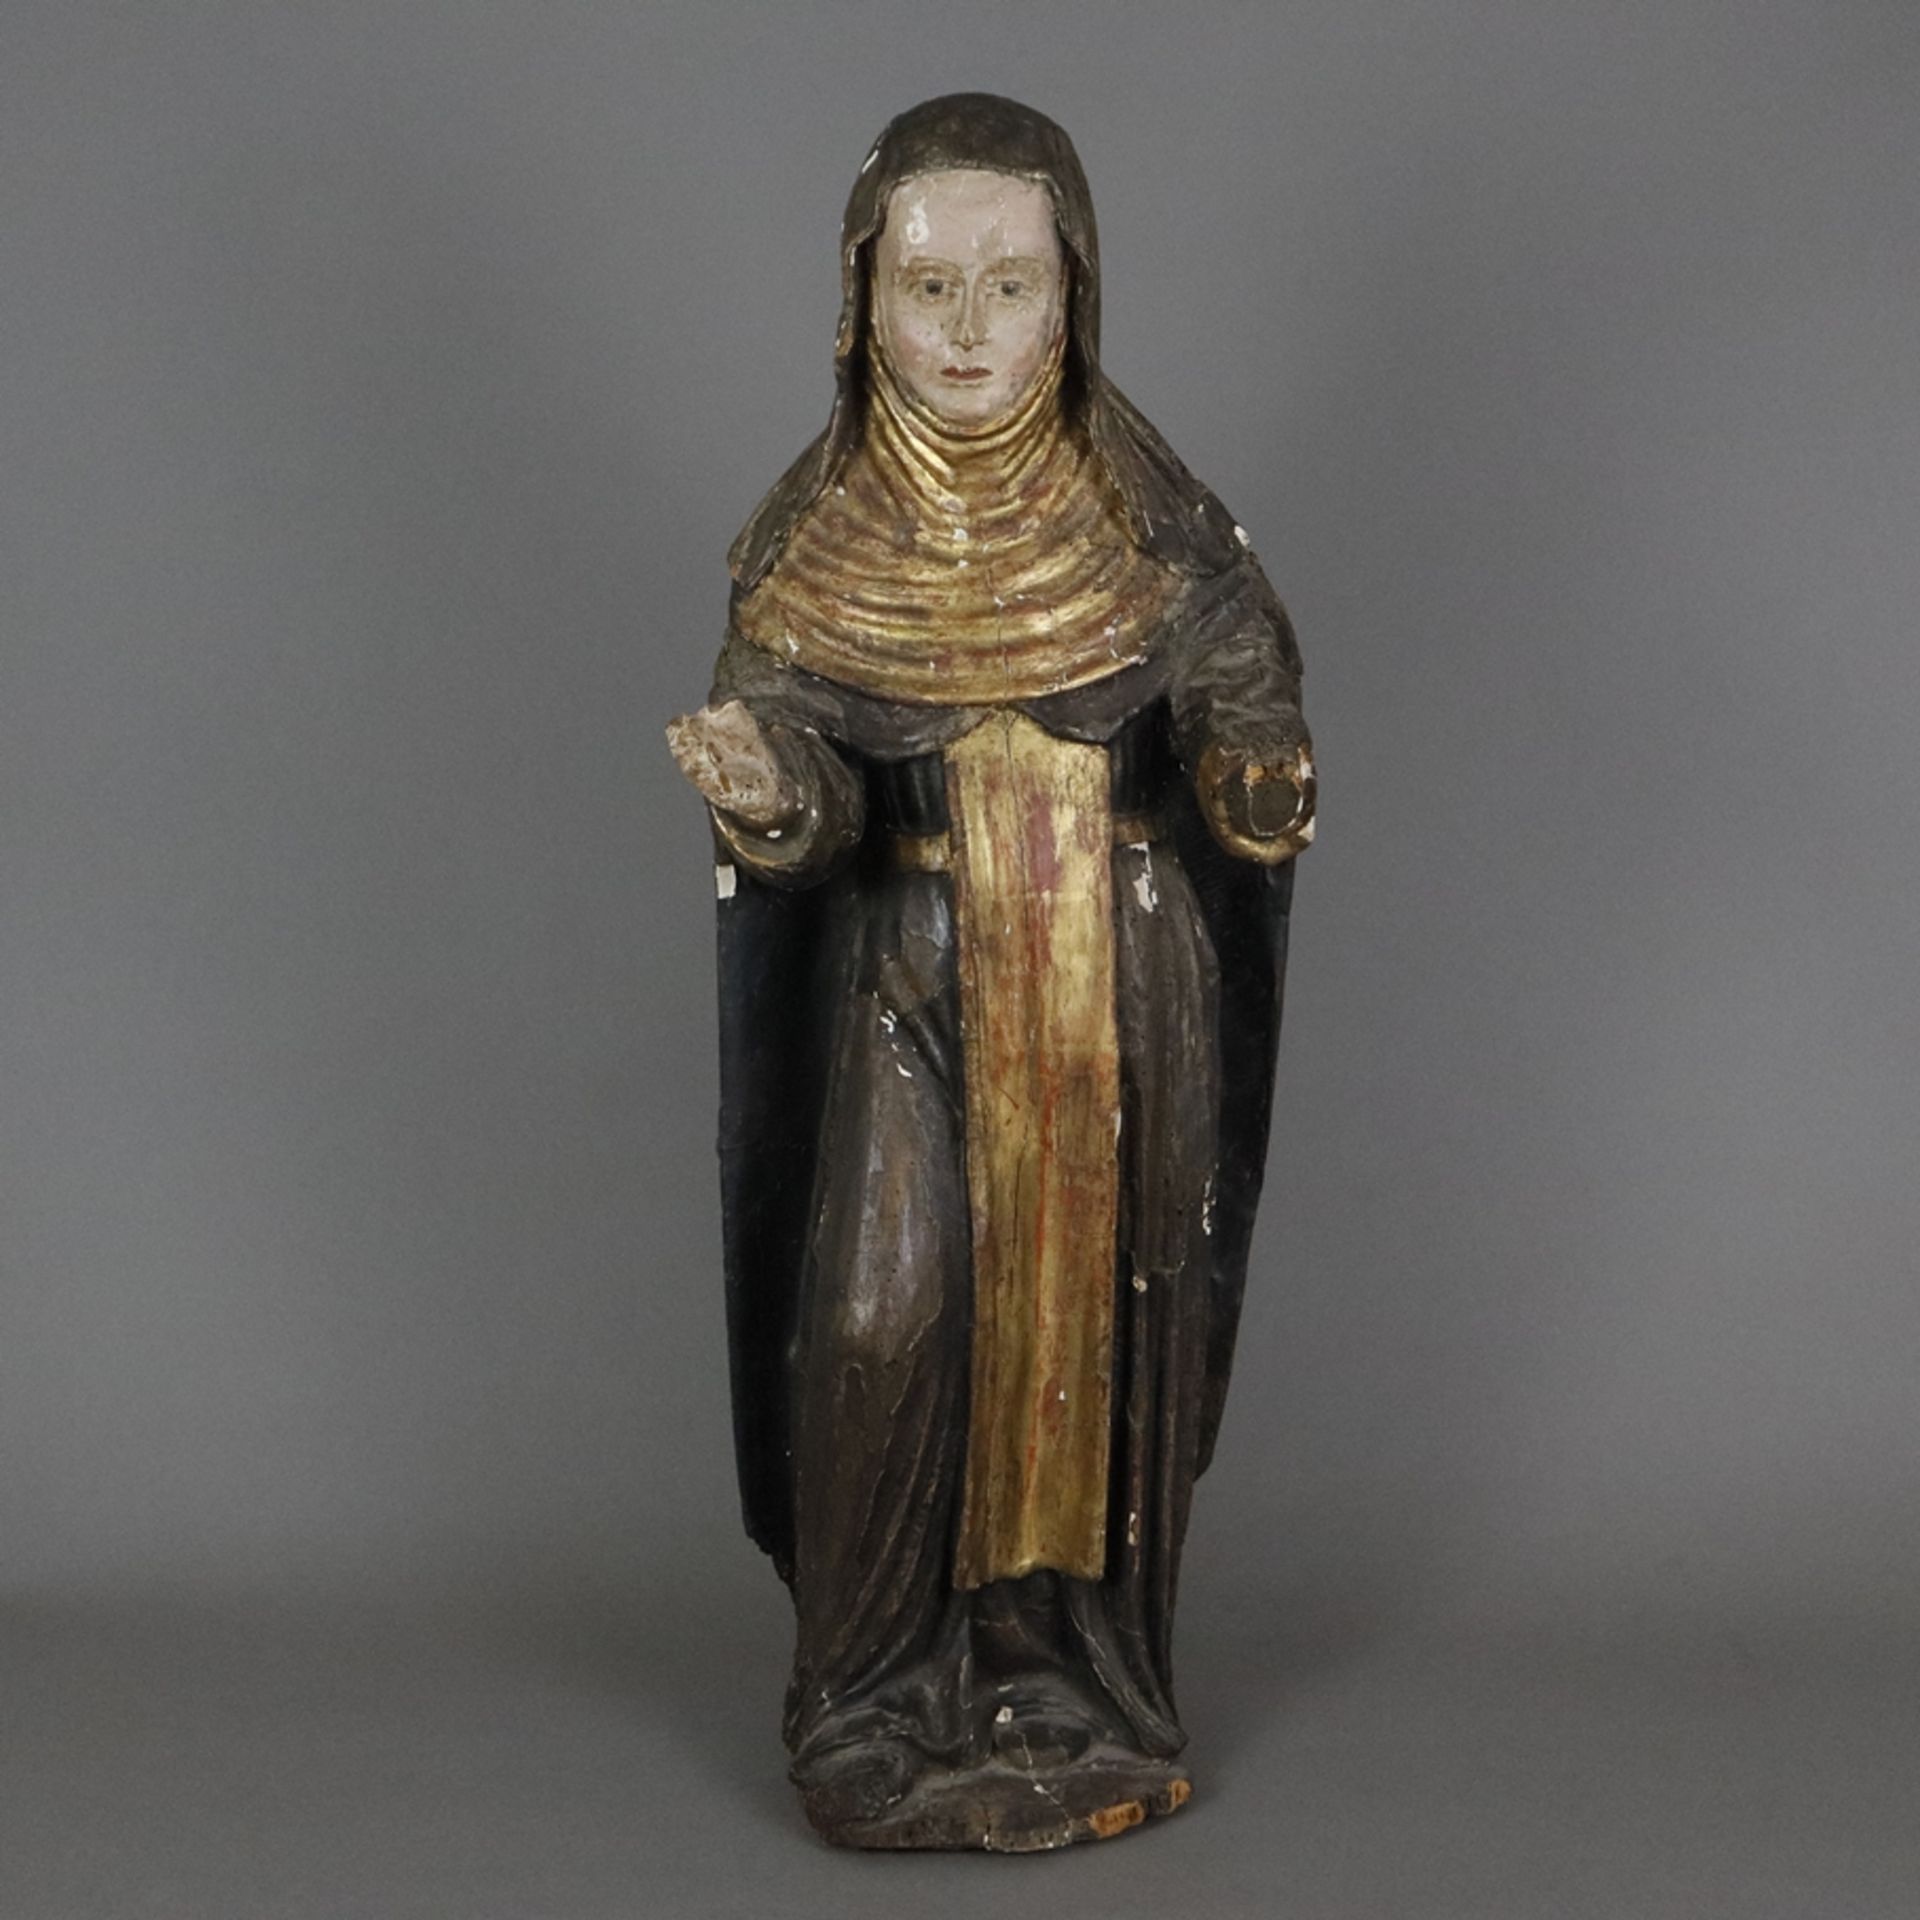 Weibliche Heiligenfigur - wohl spätgotisch, Holz, geschnitzt, polychrom und gold gefasst auf Kreide